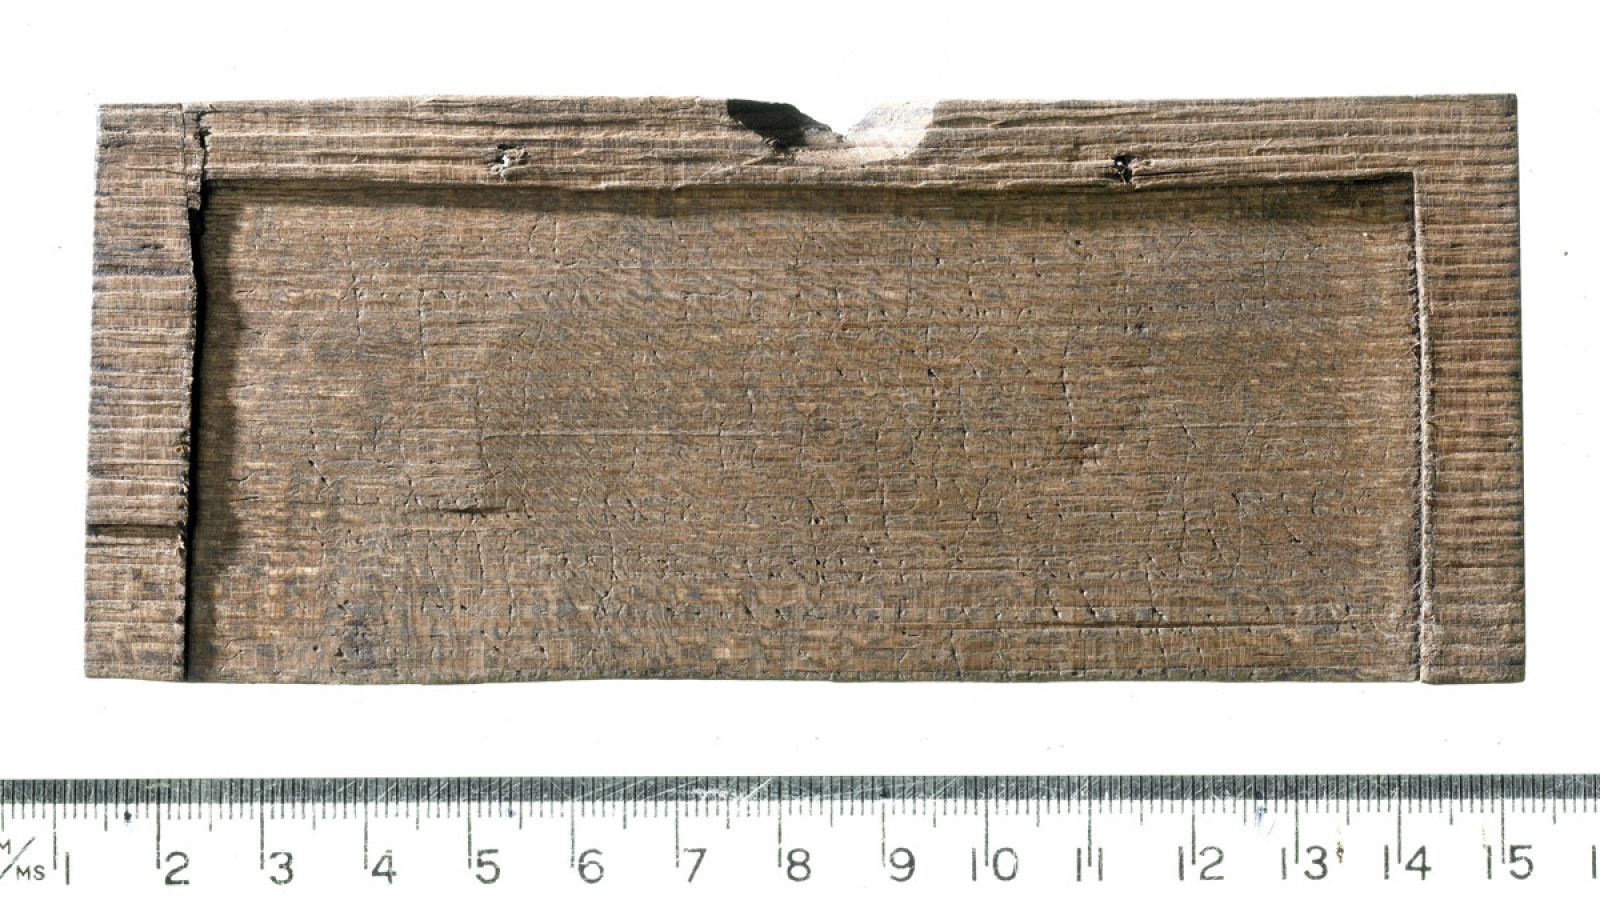 La tablilla de madera en la que está grabado el documento manuscrito más antiguo encontrado en la isla de Gran Bretaña